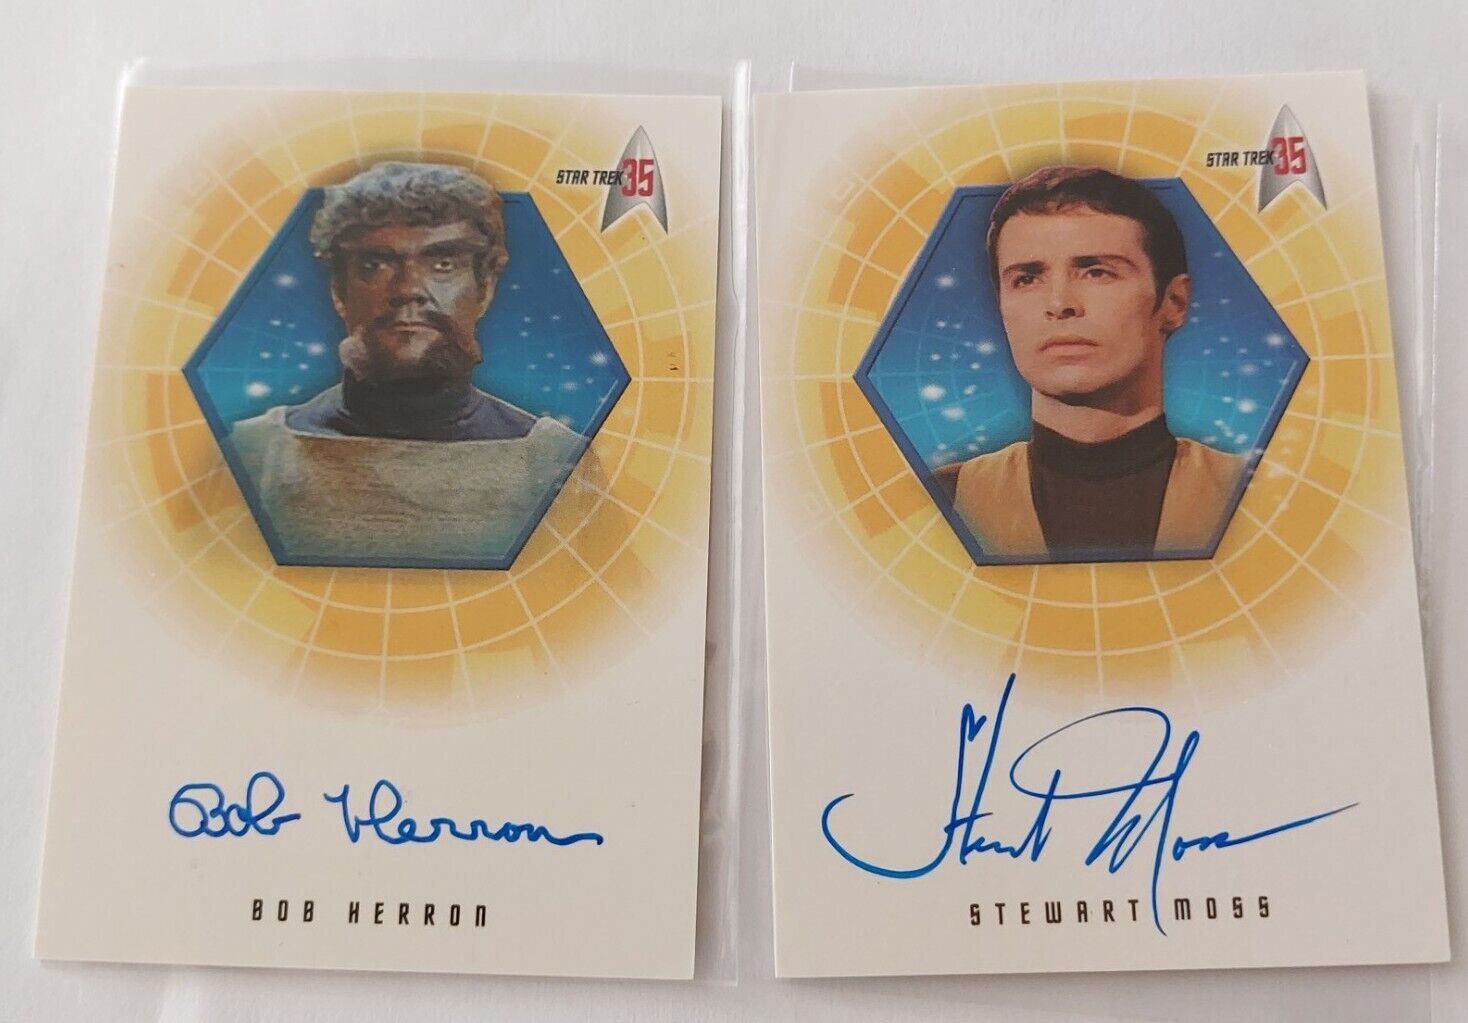 Star Trek TOS 35th Anniv both autograph cards A4 Bob Herron A15 Stewart Moss